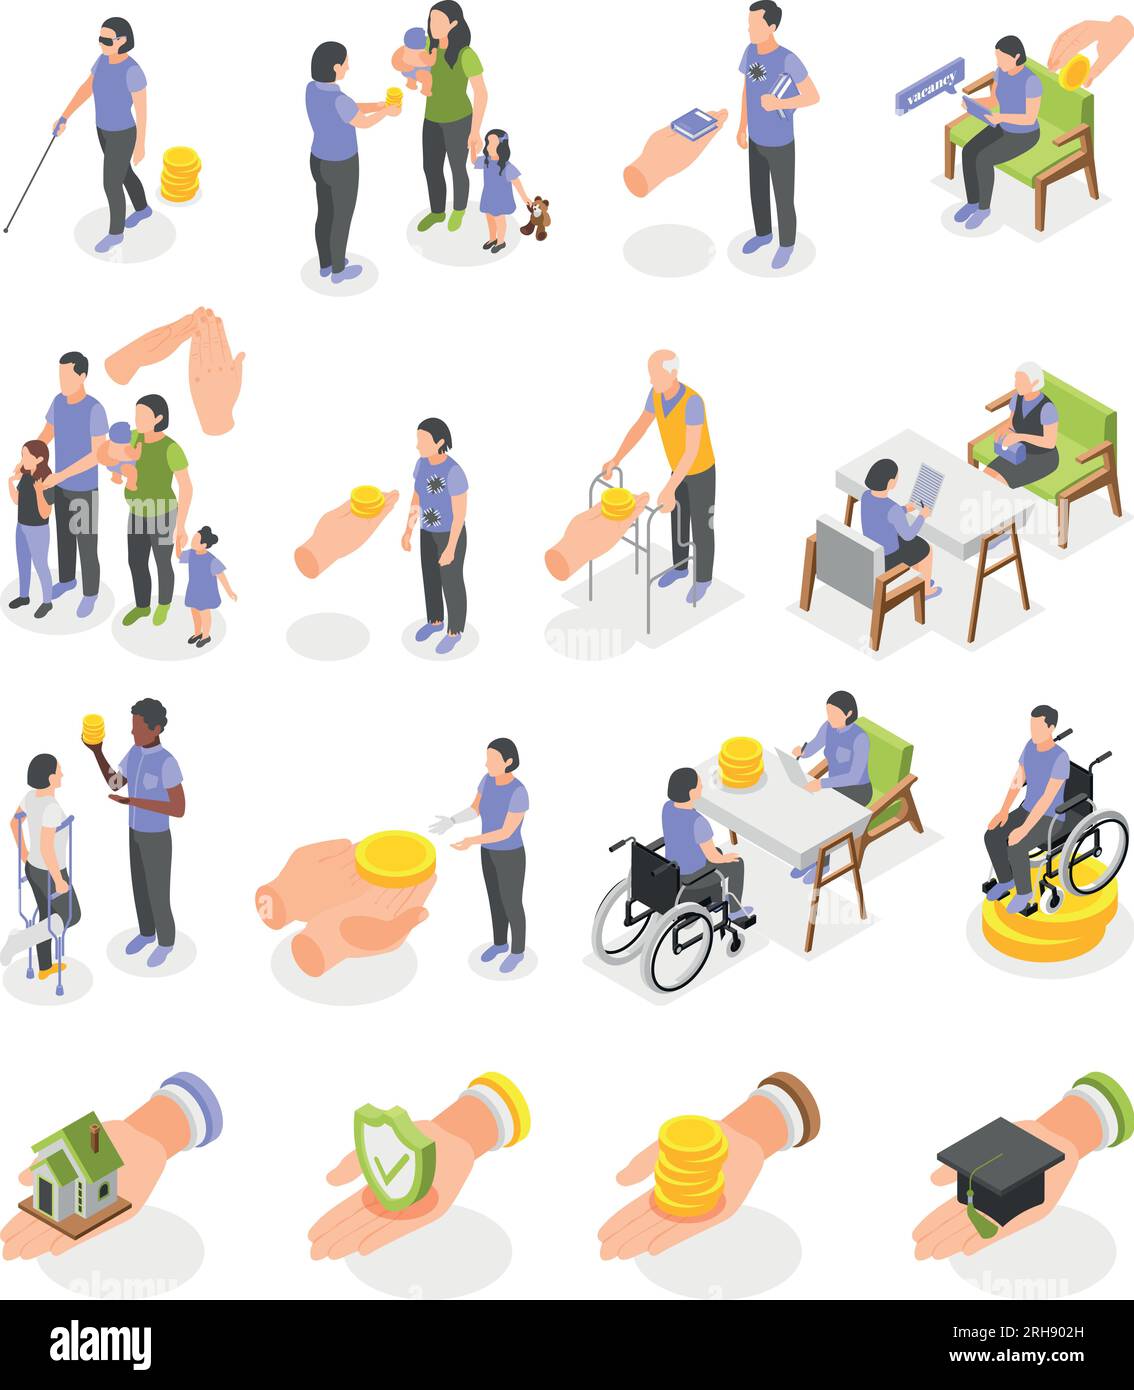 Prestazioni di assicurazione sociale per disabili istruzione familiare disoccupati icone isometriche set di illustrazioni vettoriali isolate Illustrazione Vettoriale